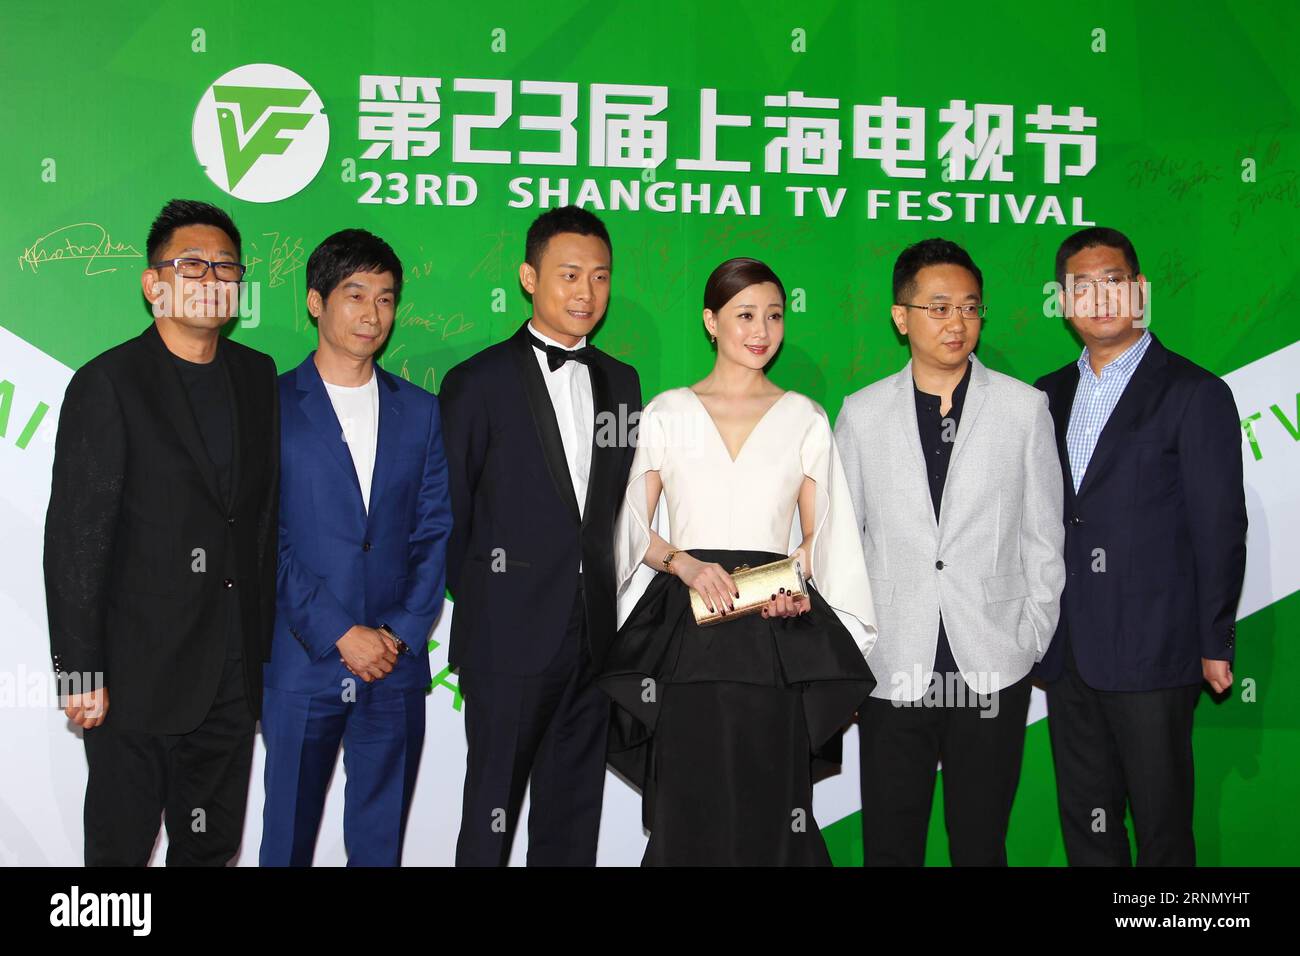 (170617) -- SHANGHAI, 17 juin 2017 -- les acteurs de la série télévisée Feather Flies to the Sky assistent à la cérémonie des Magolia Awards du 23e Festival TV de Shanghai, à Shanghai, dans l'est de la Chine, le 16 juin 2017. (Yxb) CHINA-SHANGHAI-TV FESTIVAL-MAGNOLIA AWARDS (CN) DuxXiaoyi PUBLICATIONxNOTxINxCHN Shanghai juin 17 2017 les acteurs de la série télévisée Feather FLIES to the Sky assistent à la cérémonie de remise des prix du 23e Festival TV de Shanghai à Shanghai est de la Chine juin 16 2017 yxb China Shanghai TV Festival Magnolia Awards CN PUBLICATIONxNOTxINxINxCHN Banque D'Images